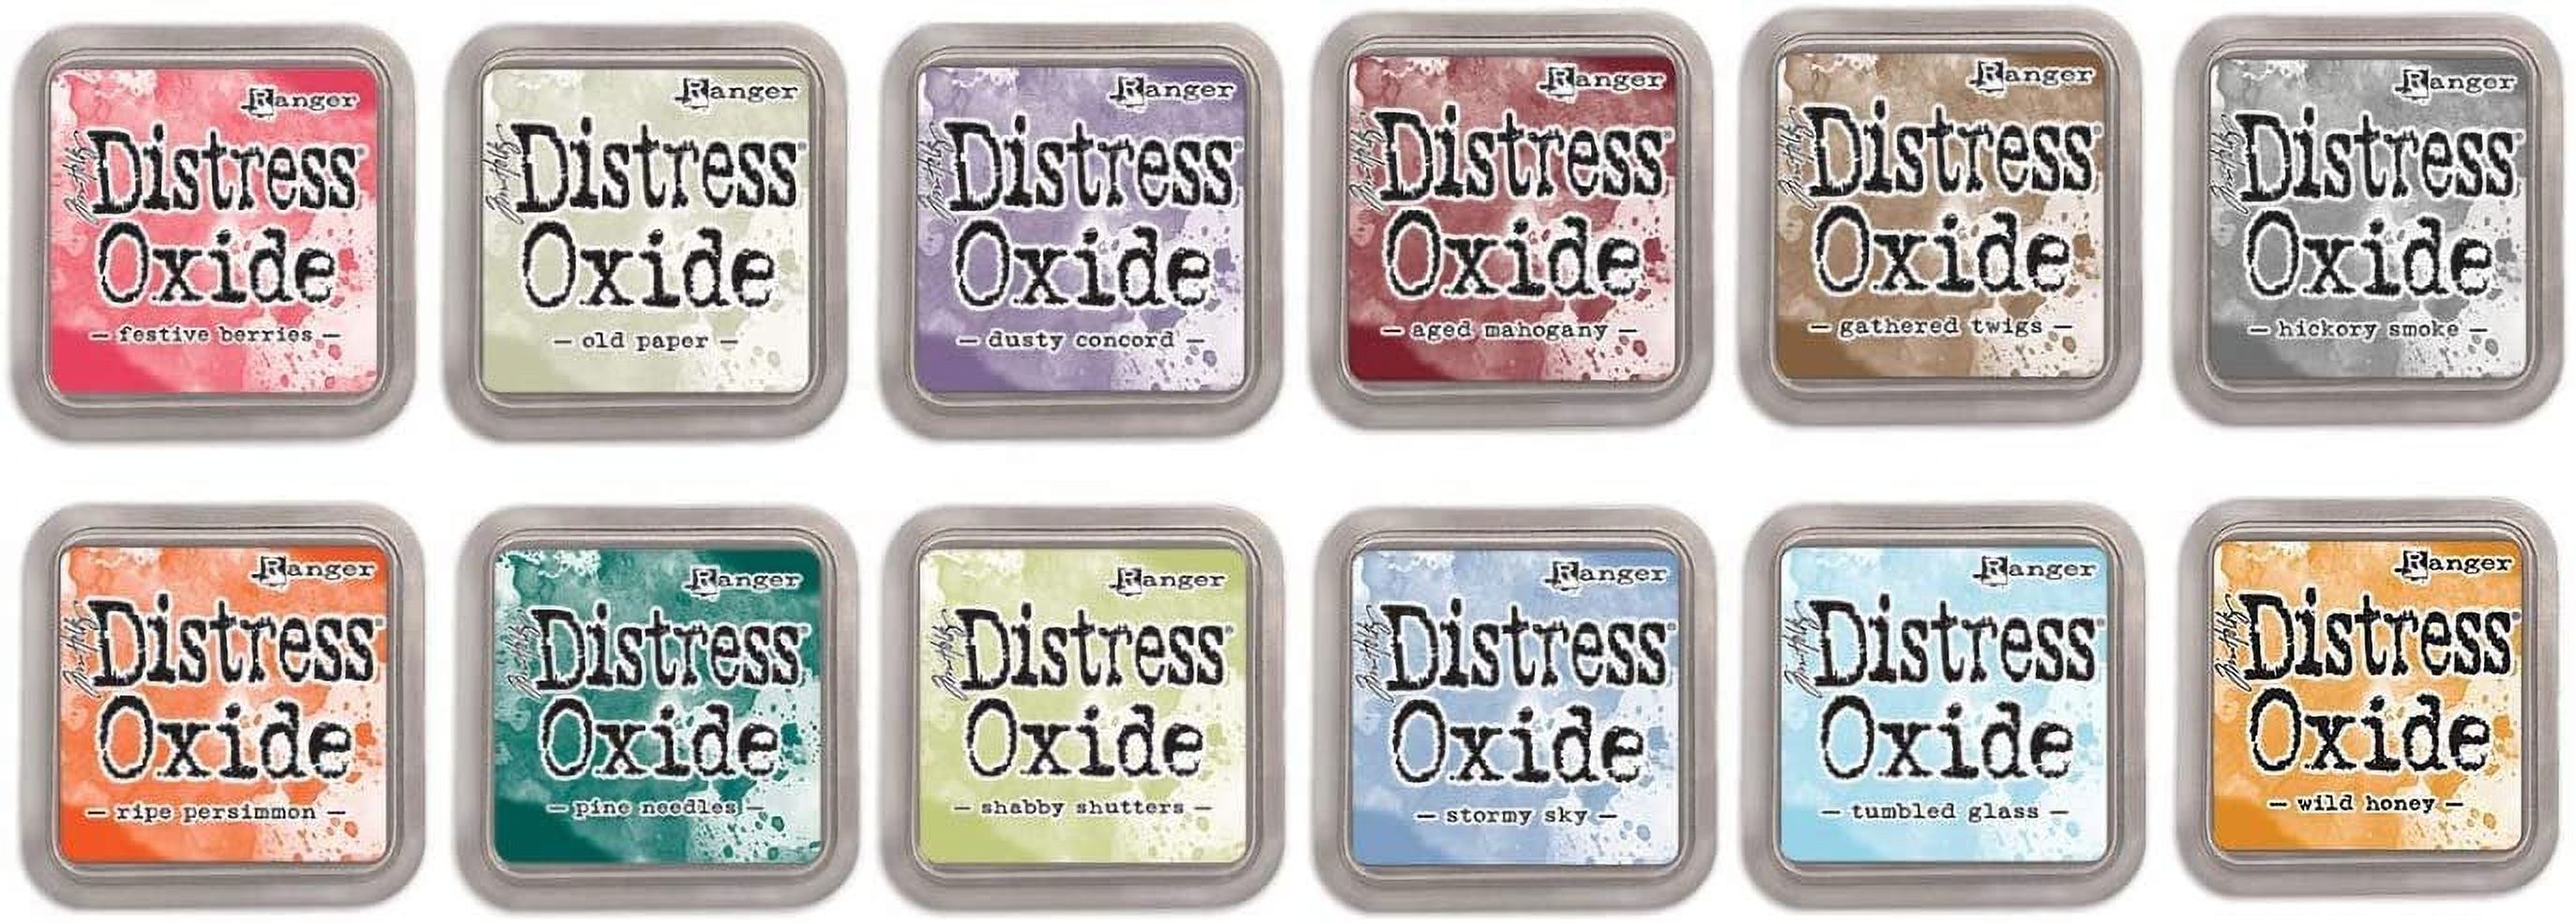 Ranger Distress Oxide Bundles - Includes 12 Distress Oxide Colors with PTP  Flash Deals Detail Sticks Set 5-12 Ink Pads 